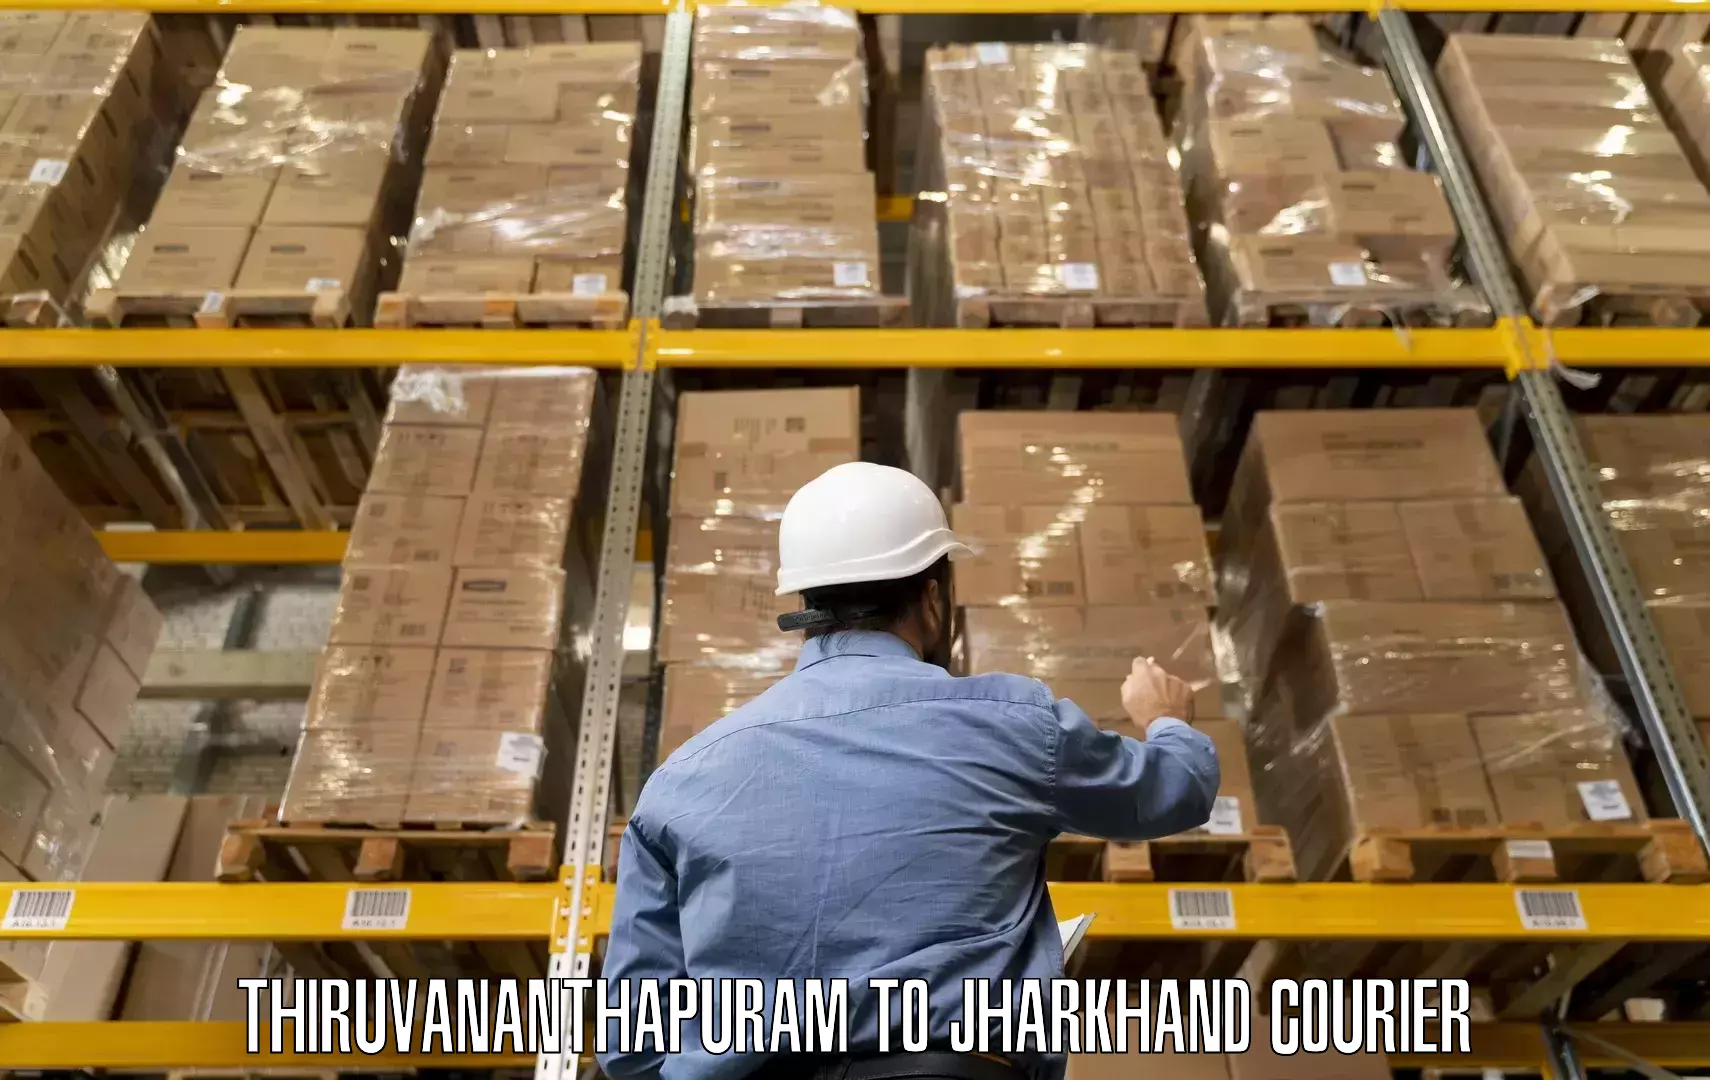 Furniture transport company Thiruvananthapuram to Chhatarpur Palamu